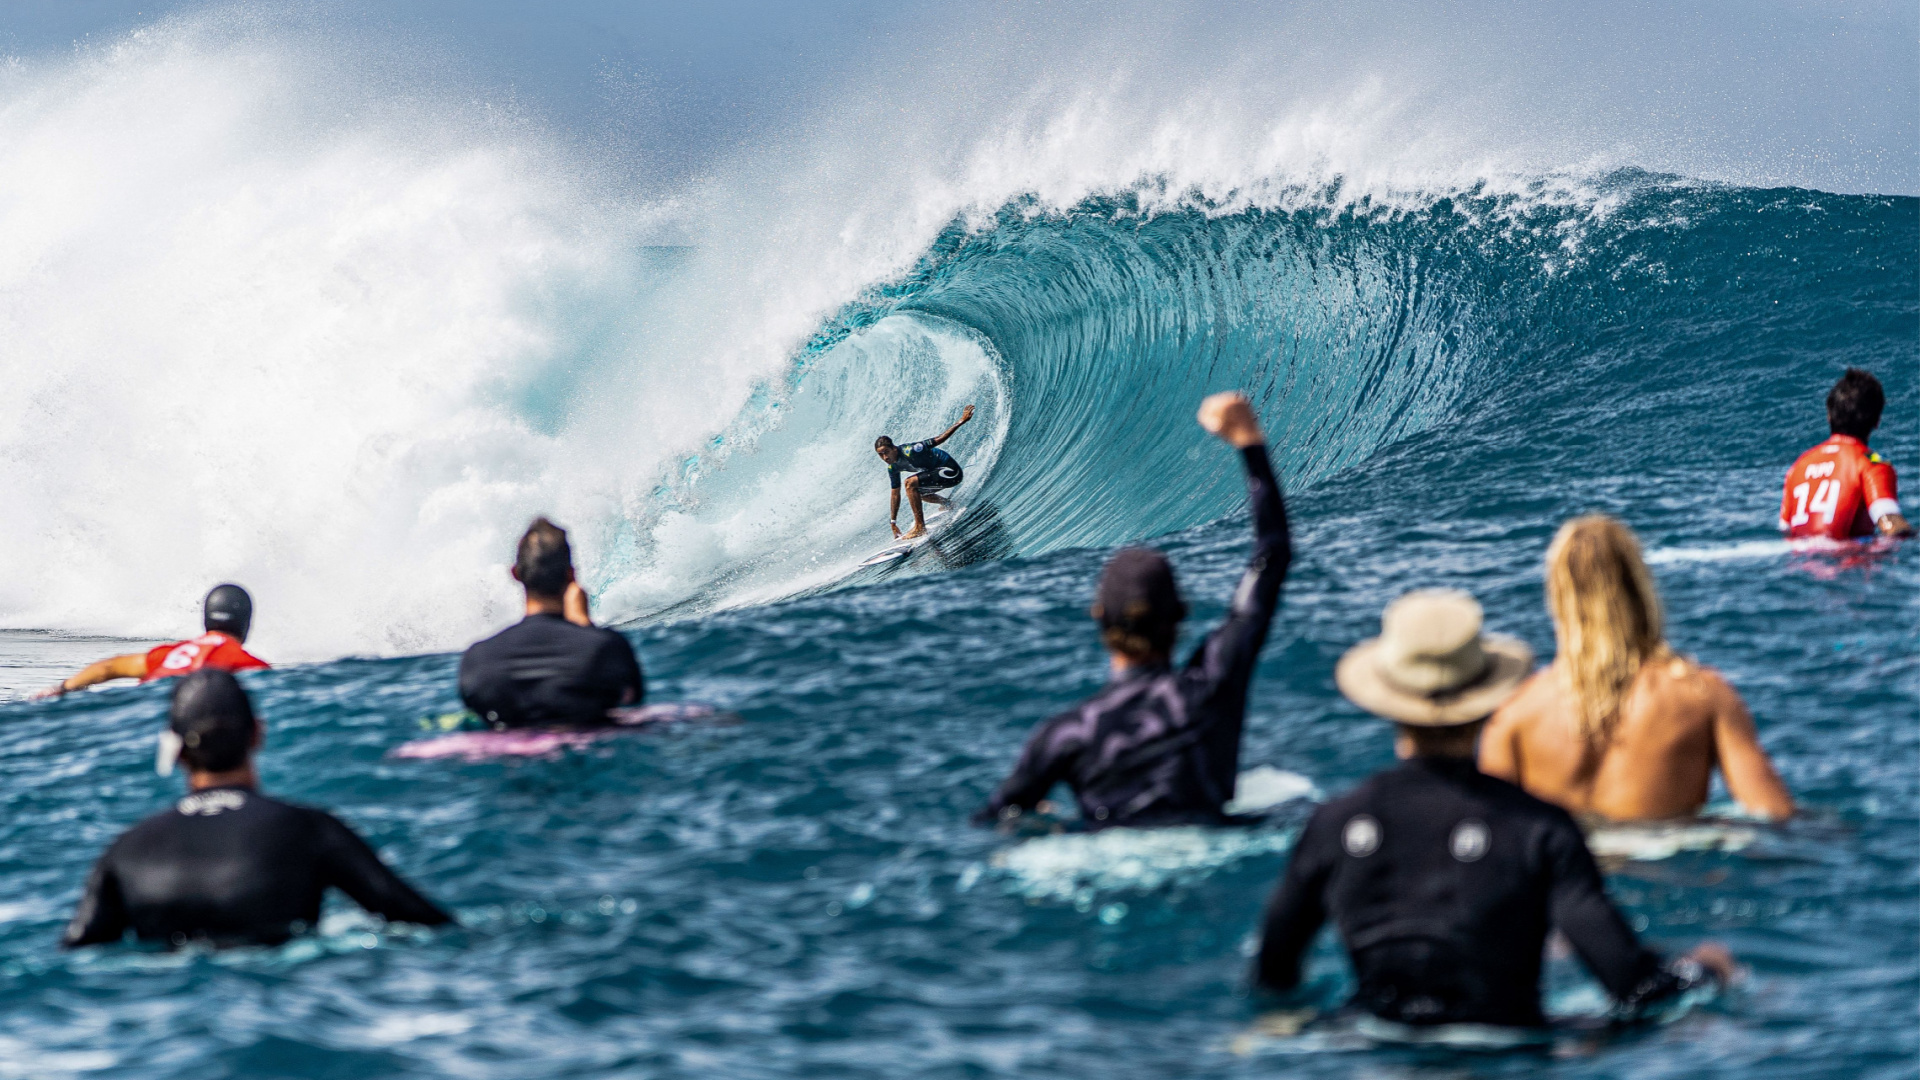 El surf olímpico enciende la pasión en las legendarias olas de Teahupo'o